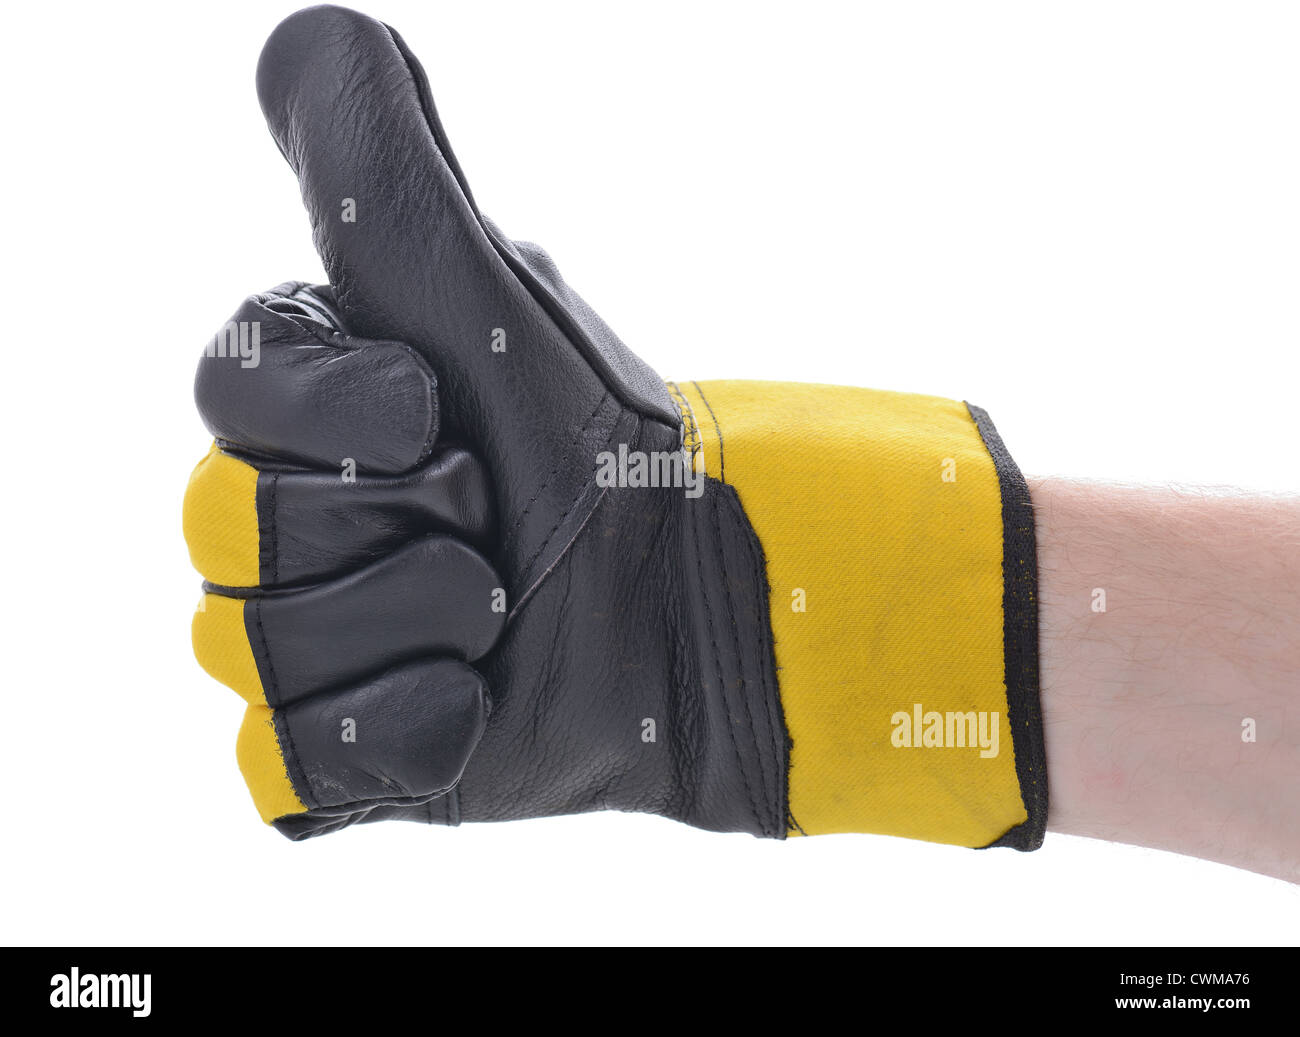 Symbole de ok Thumbs up portant un gant de sécurité pour les travaux de construction Banque D'Images